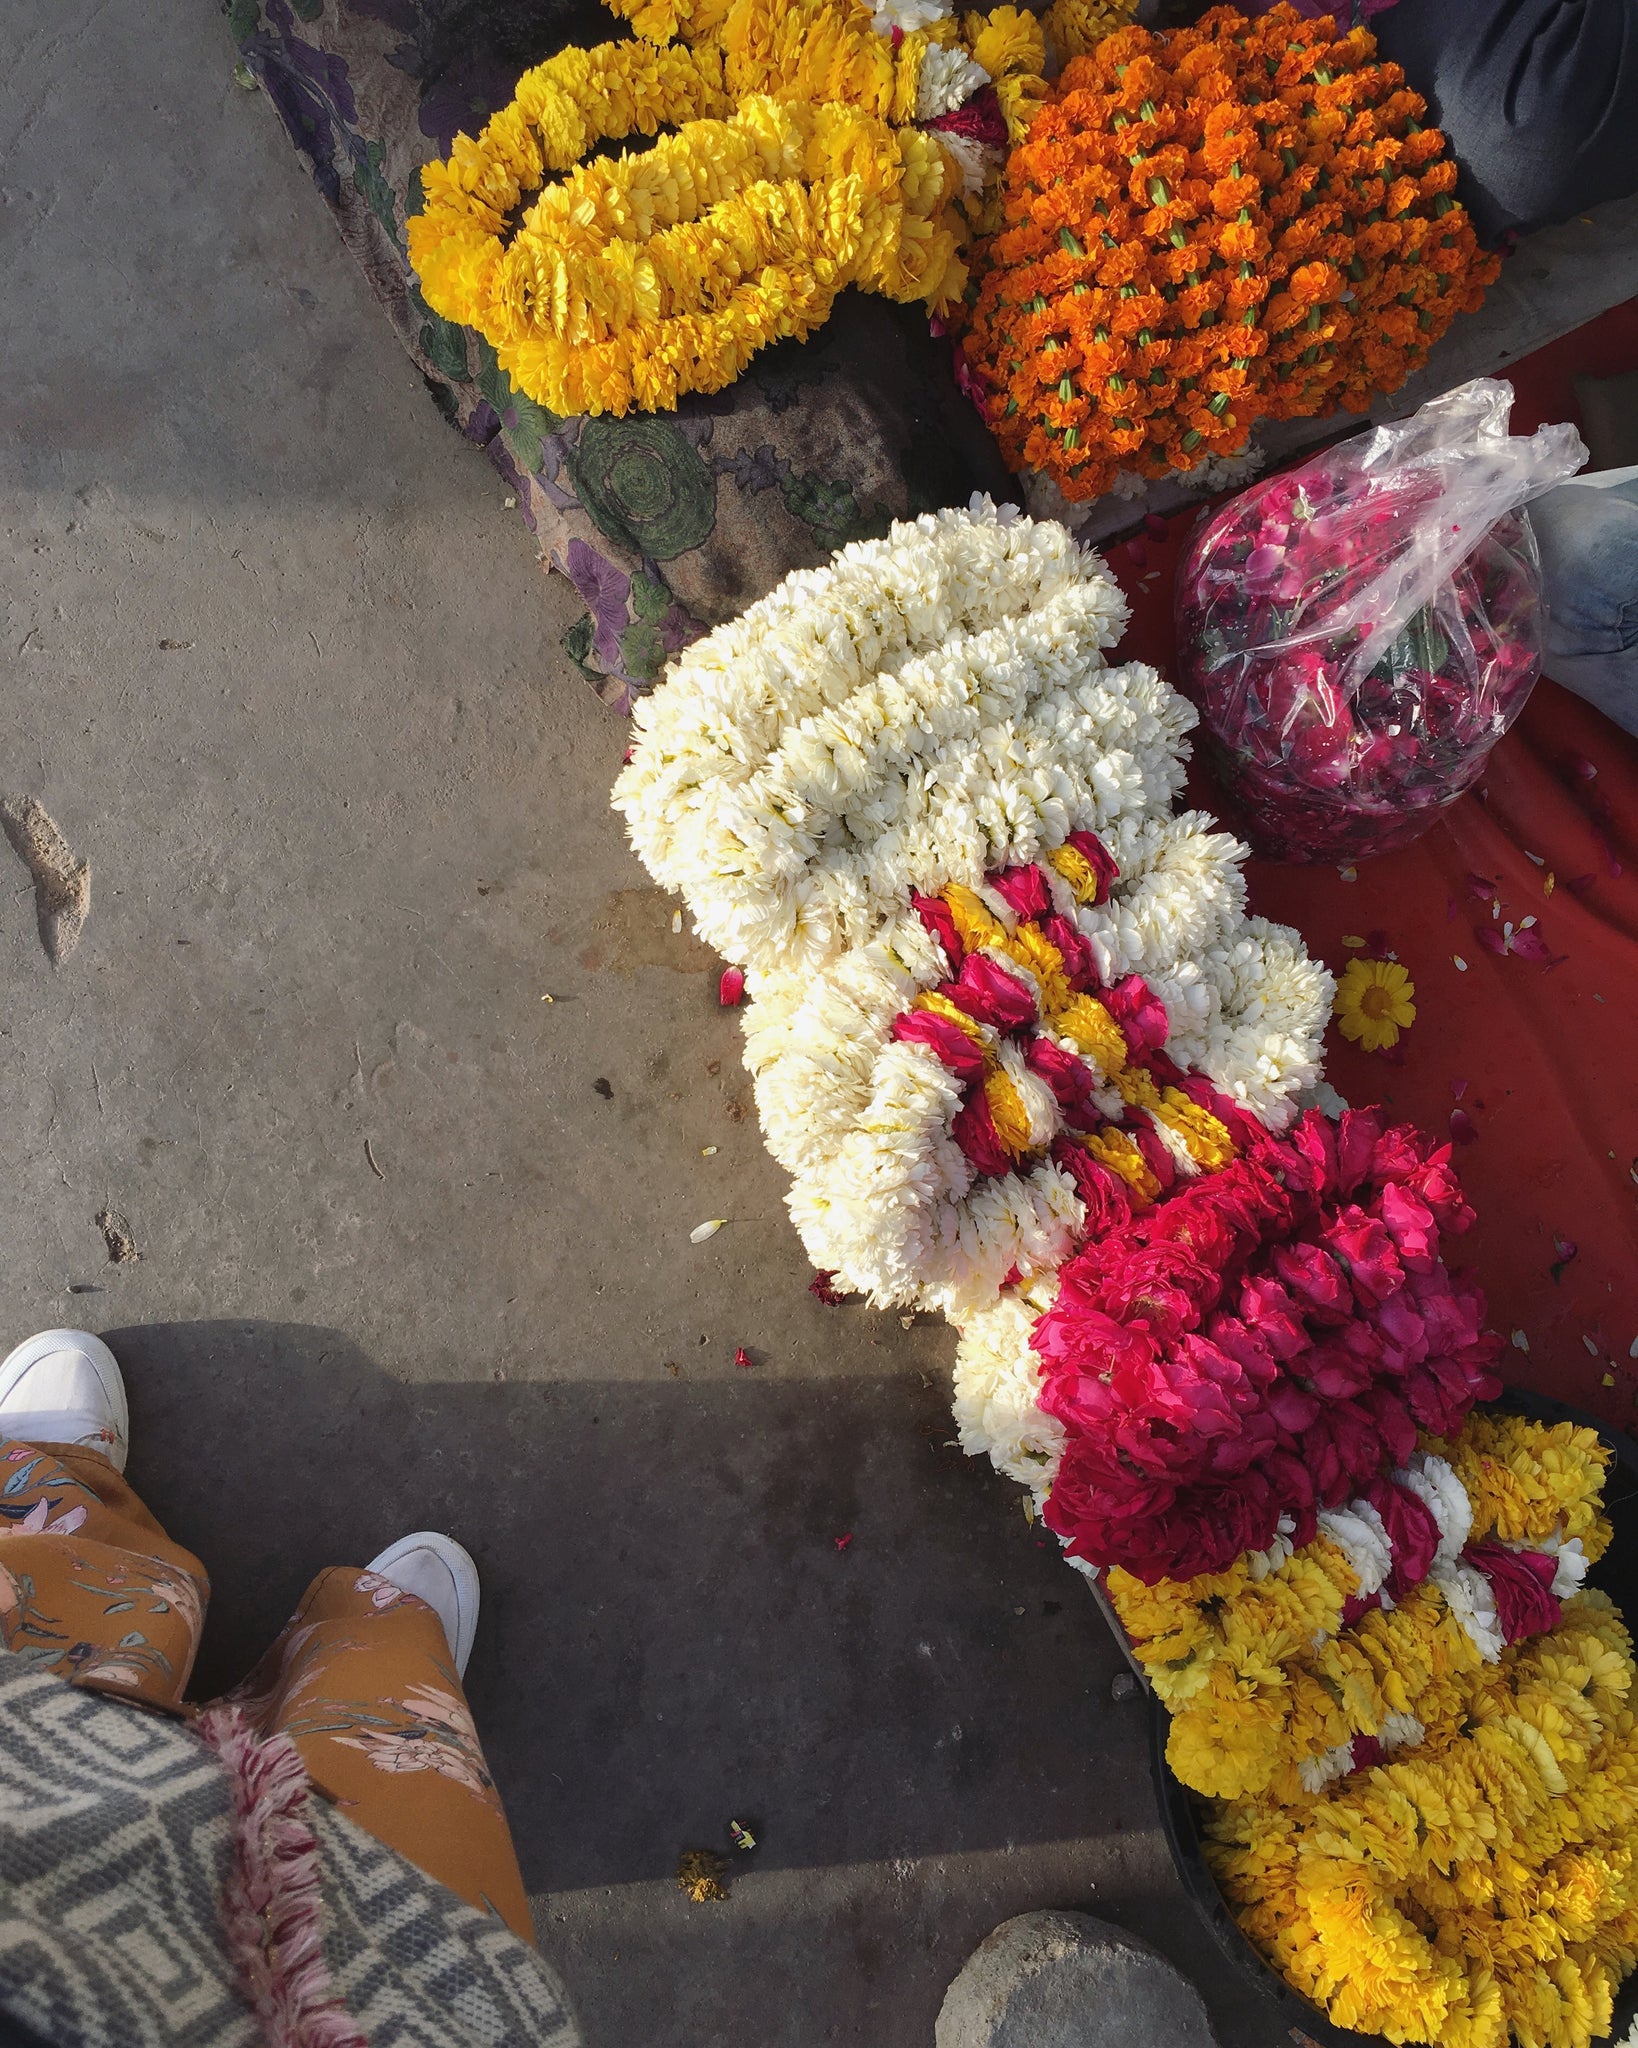 mara meas Inspirationsquelle sind unter anderem die bunten Straßen Indiens